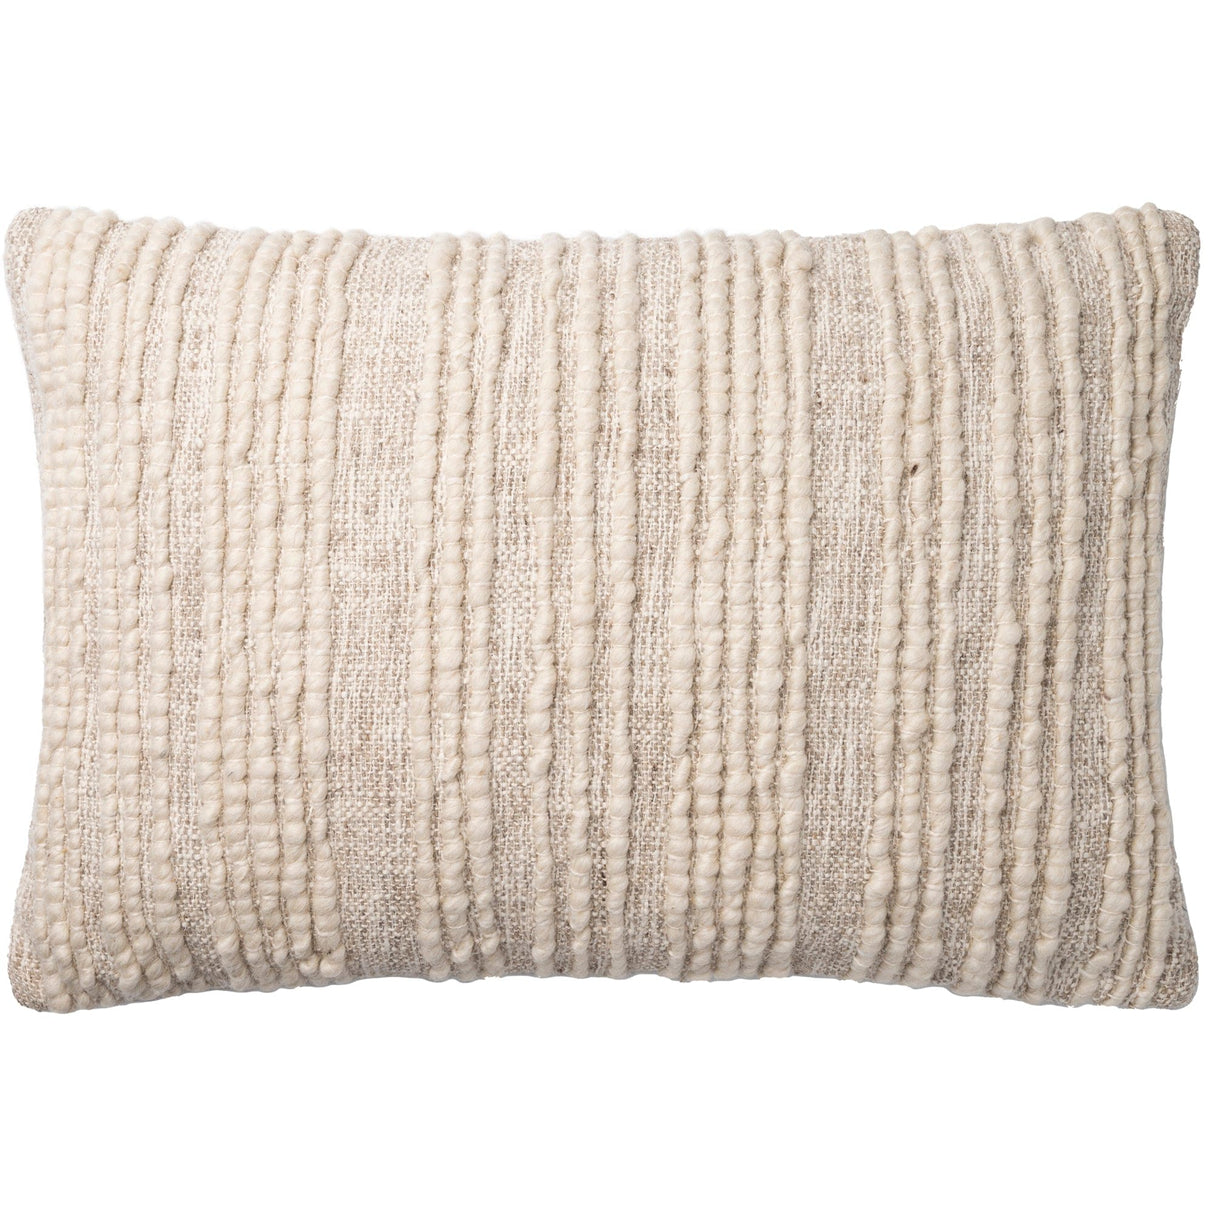 Loloi Pillow - Natural Pillows loloi-P096P0862NA00PI15 885369501425